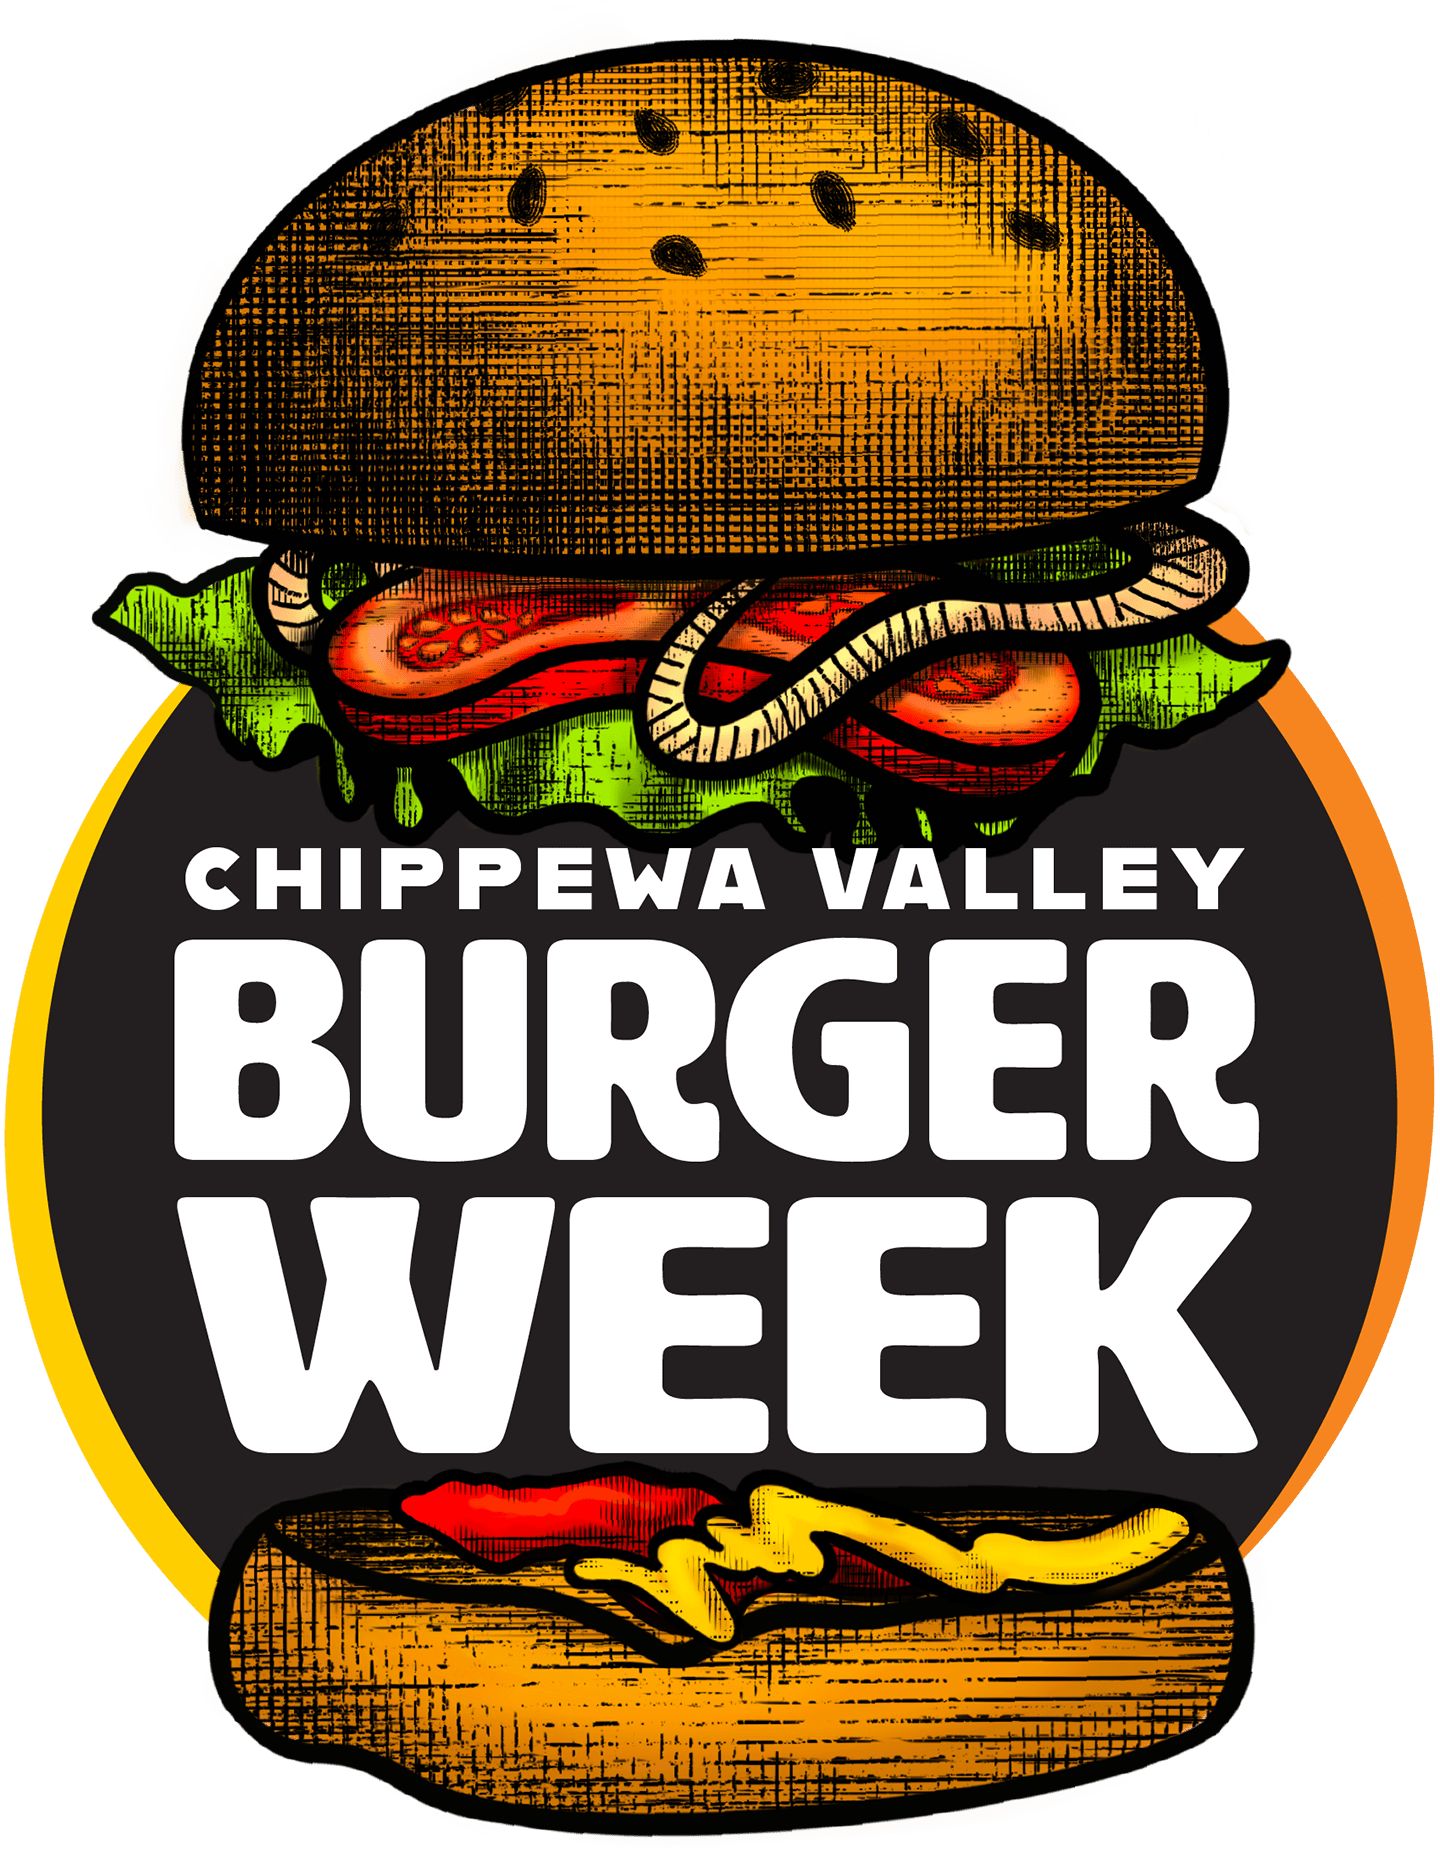 Chippewa Valley Burger Week